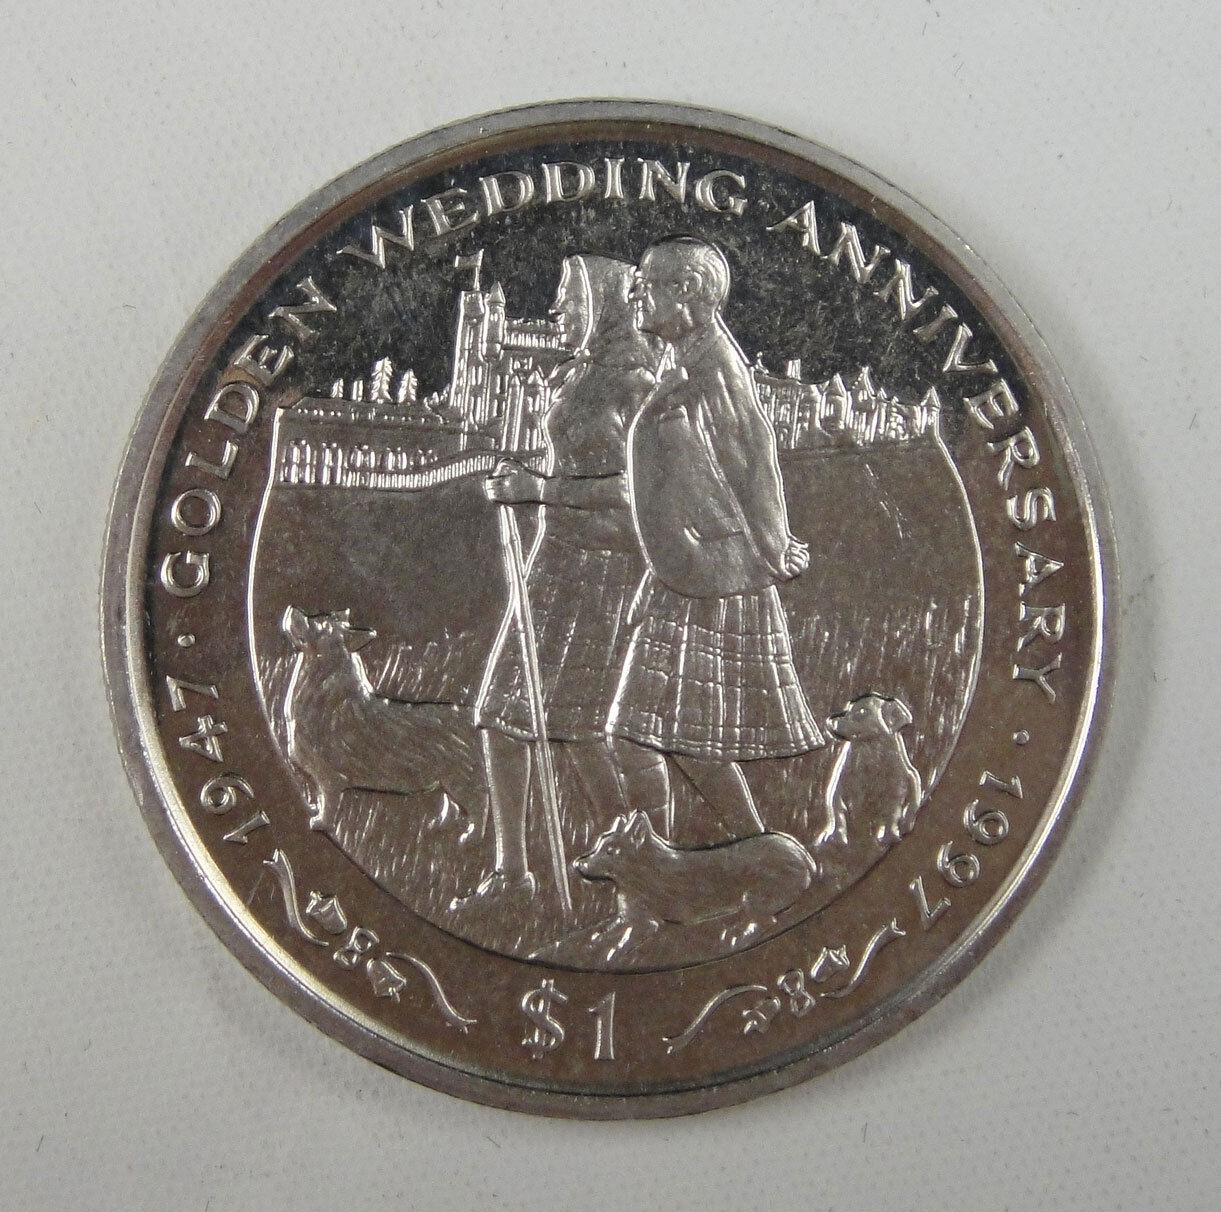 Liberia Commemorative Coin $1 1997 UNC,  Golden Wedding Anniversary 1947-1997